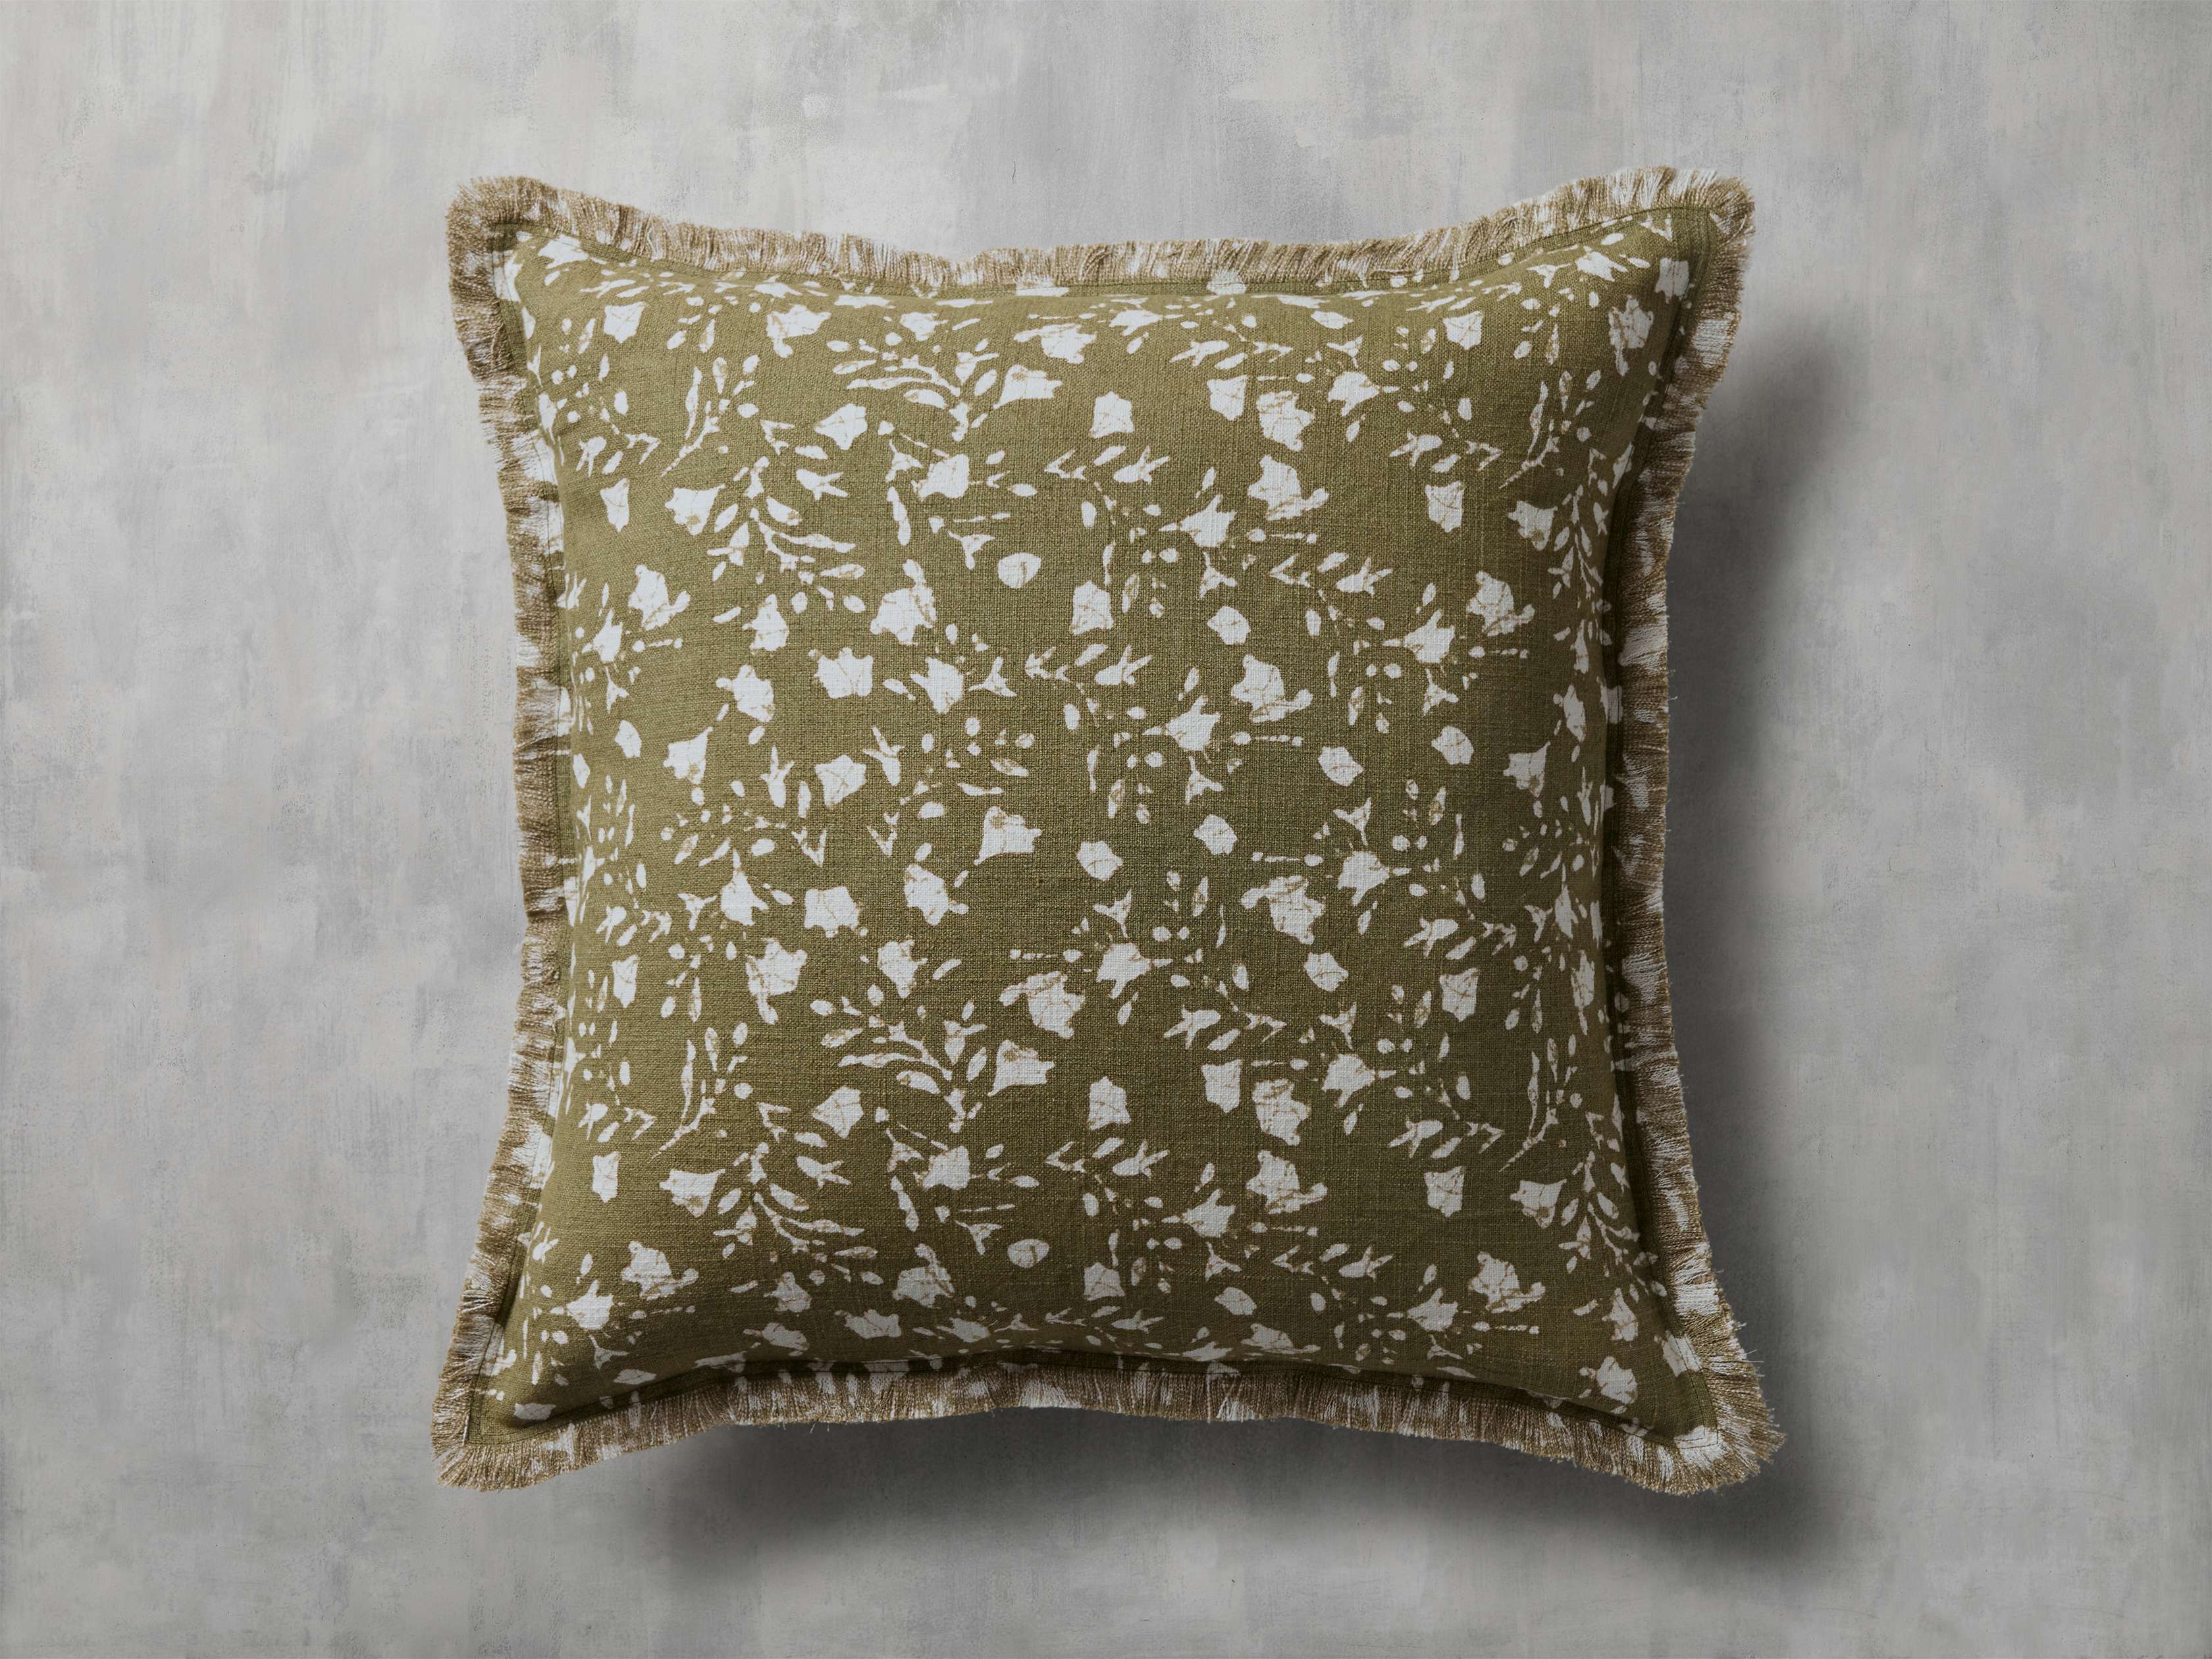 Lomi Pillow Cover – Arhaus